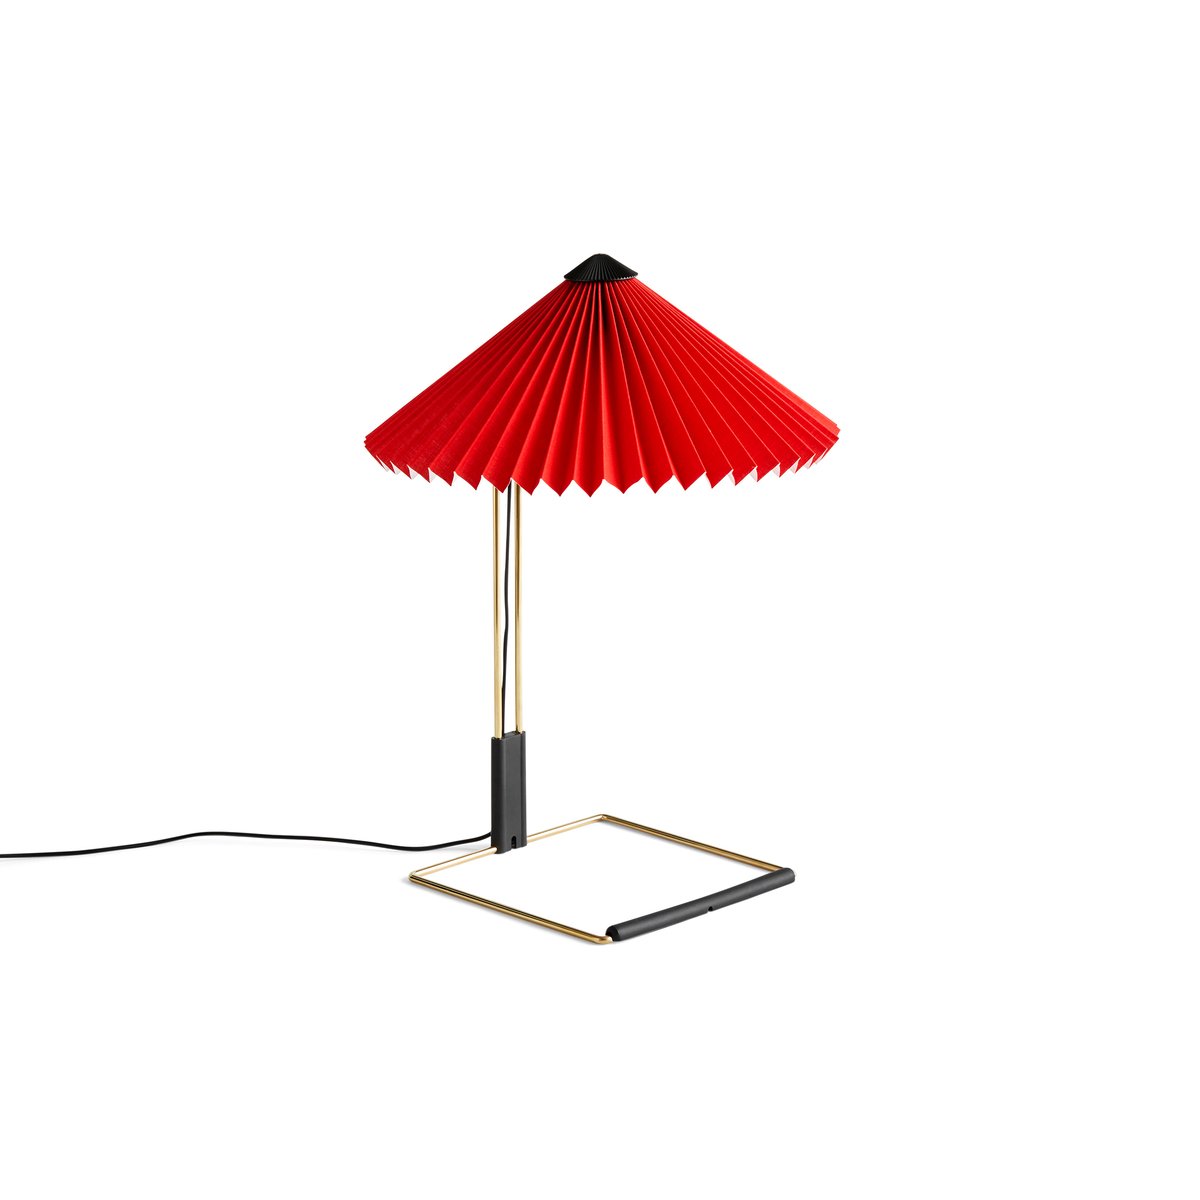 HAY Matin table pöytävalaisin Ø30 cm Bright red shade